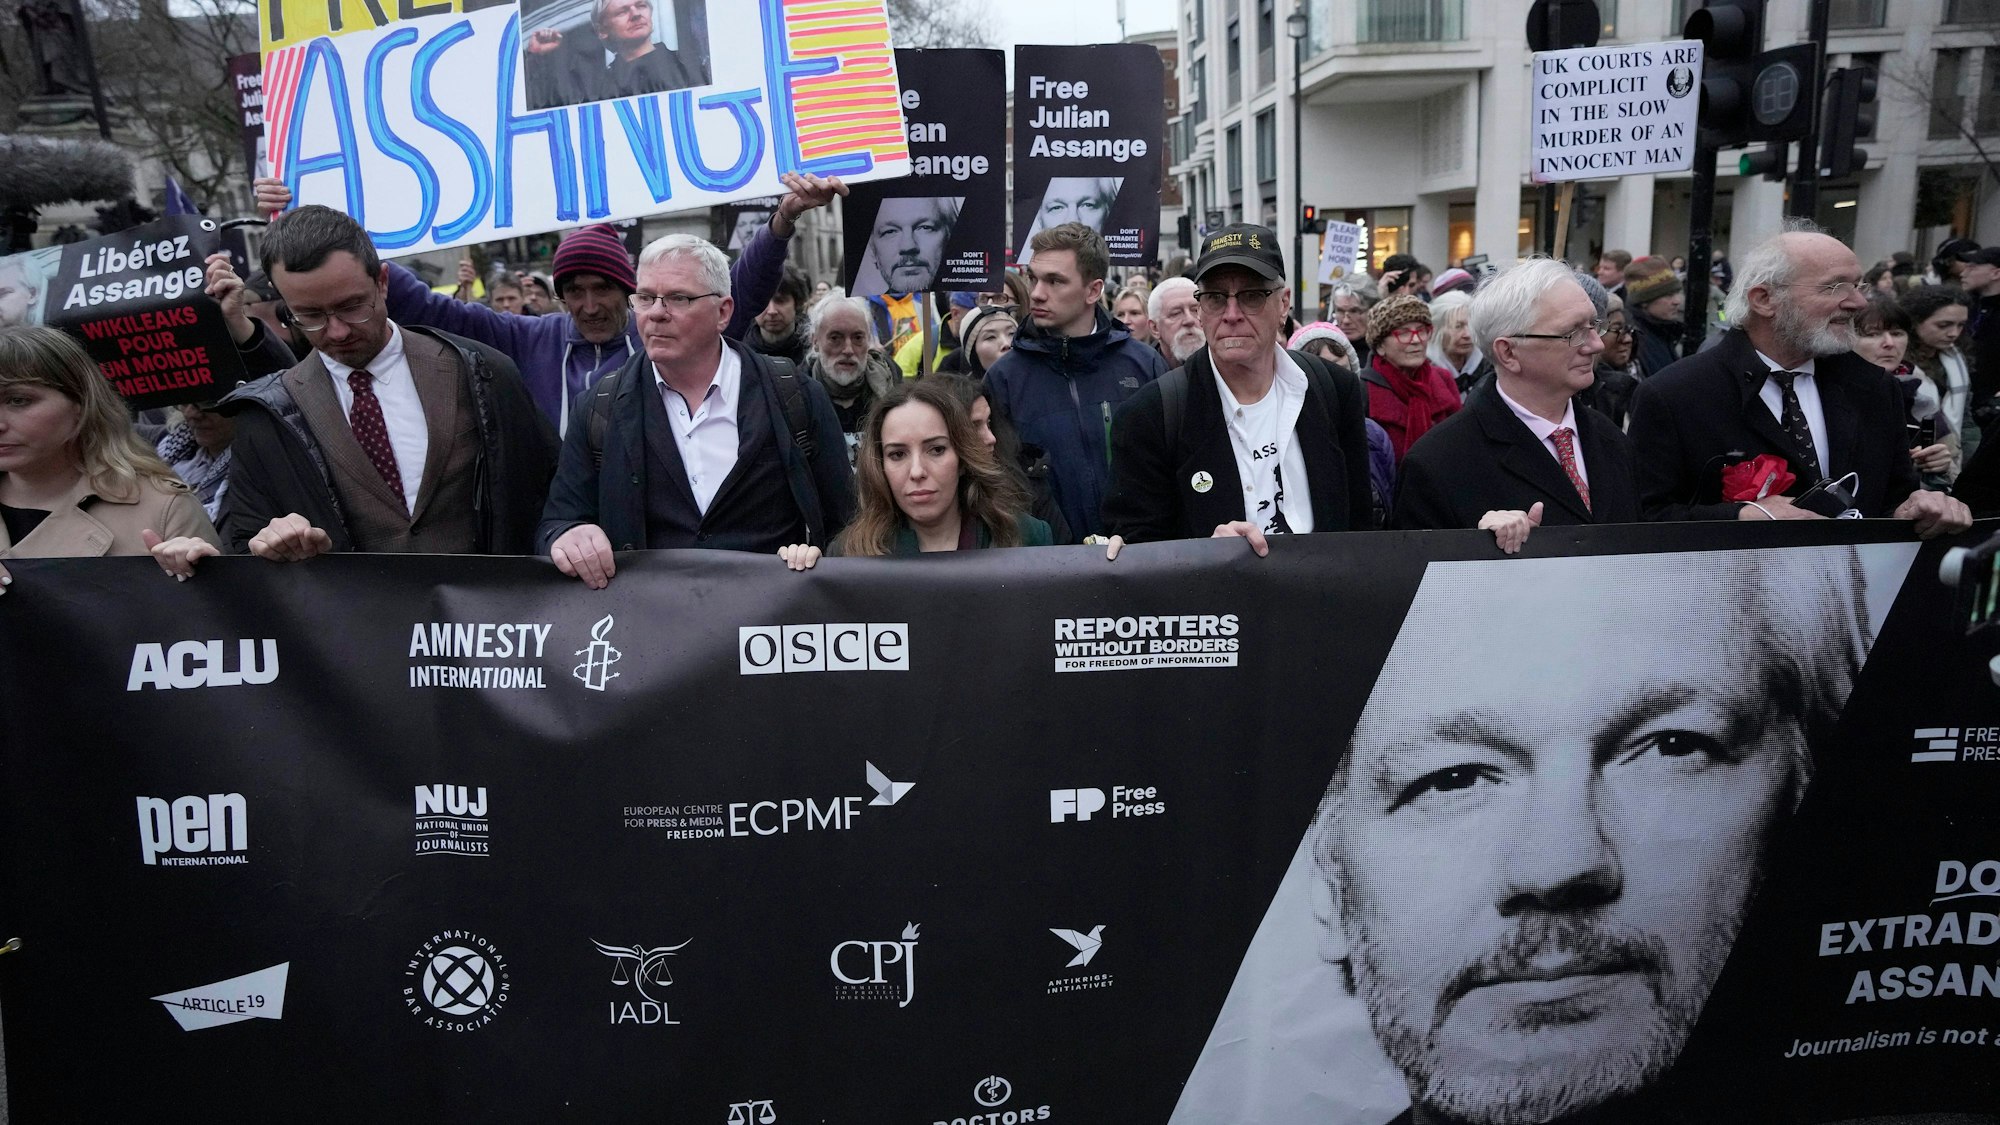 Stella Assange, Ehefrau von Julian Assange, marschiert am Ende einer zweitägigen Anhörung vor dem Royal Courts of Justice zusammen mit Demonstranten zur Downing Street.